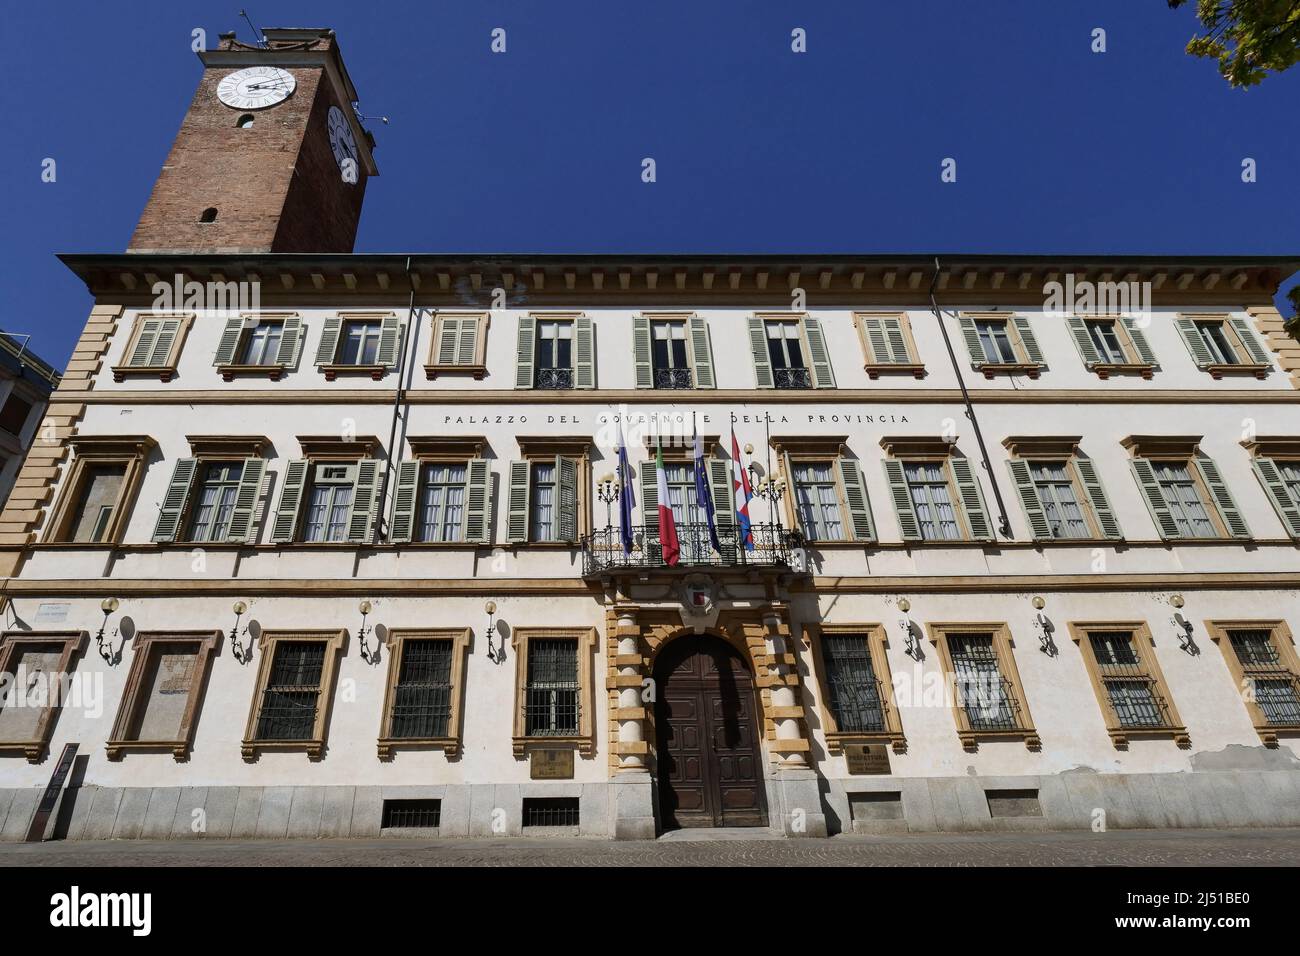 Der Palazzo Natta ist ein alter, historisch-nobler Palast in der Stadt Novara im Piemont. Heute beherbergt sie die Provinz Novara und die Präfektur Stockfoto